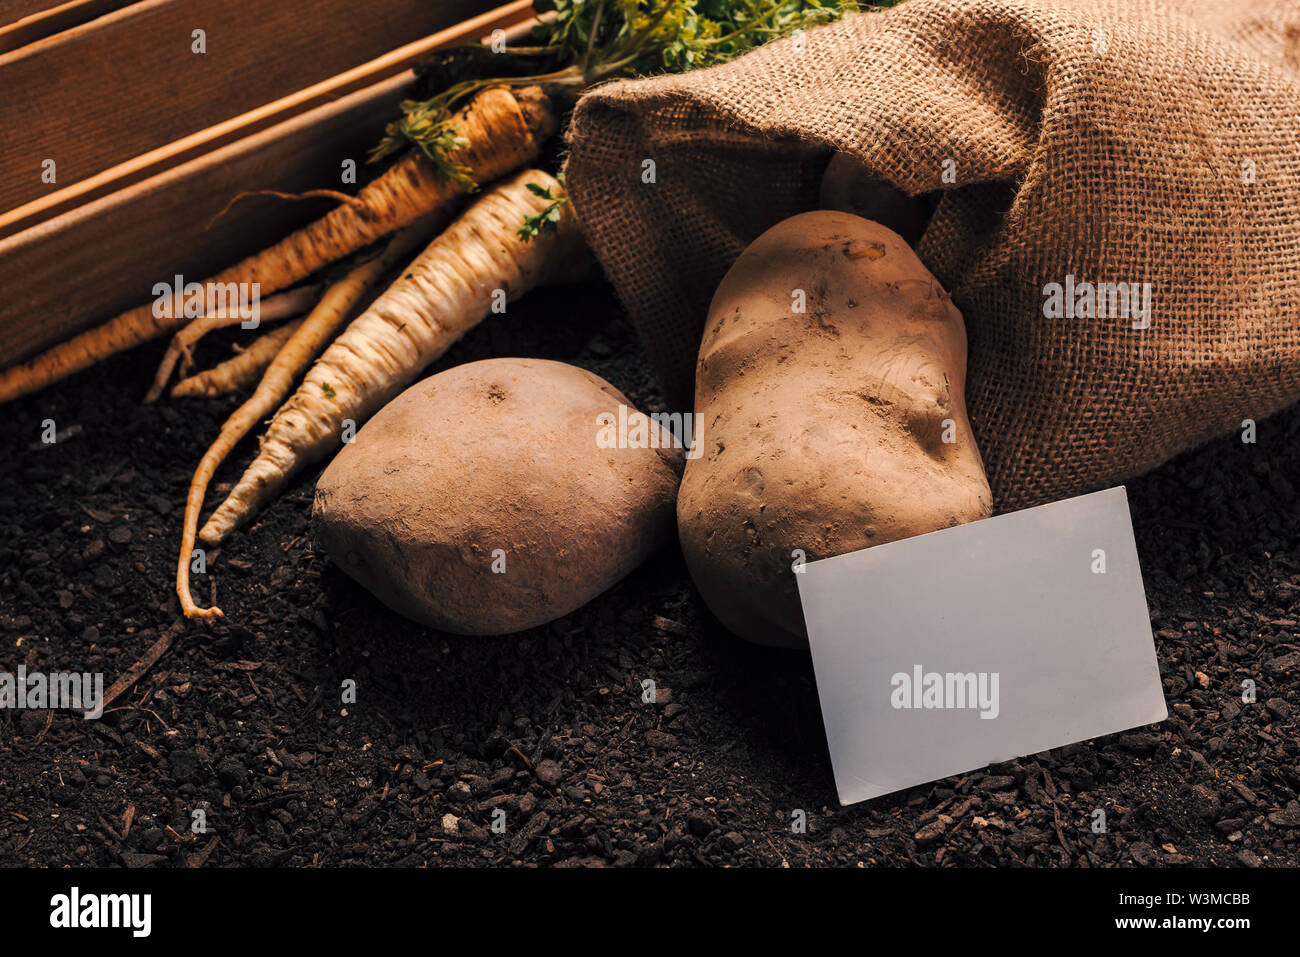 Agricoltura biologica di prezzemolo e patate con business card mock up caserecci vegetali di produzione alimentare Foto Stock